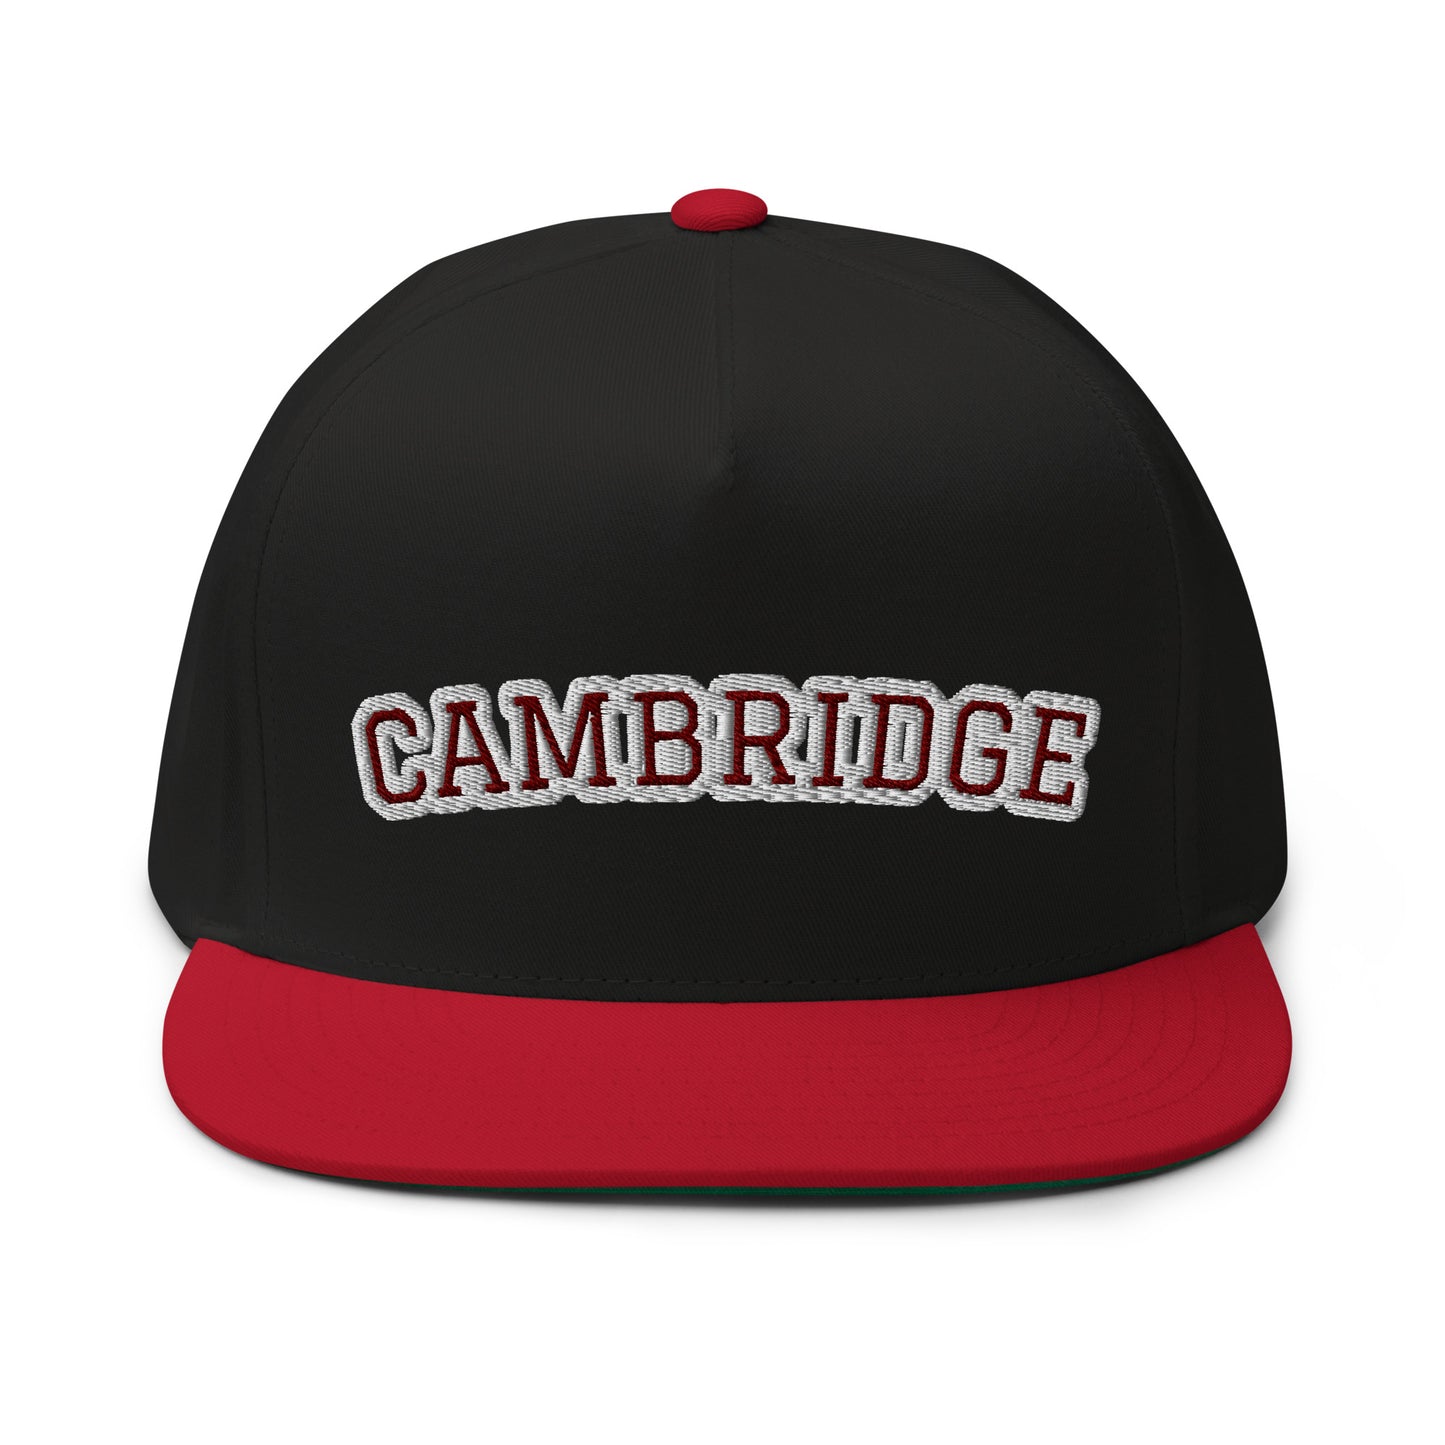 Cambridge Flat Bill Cap